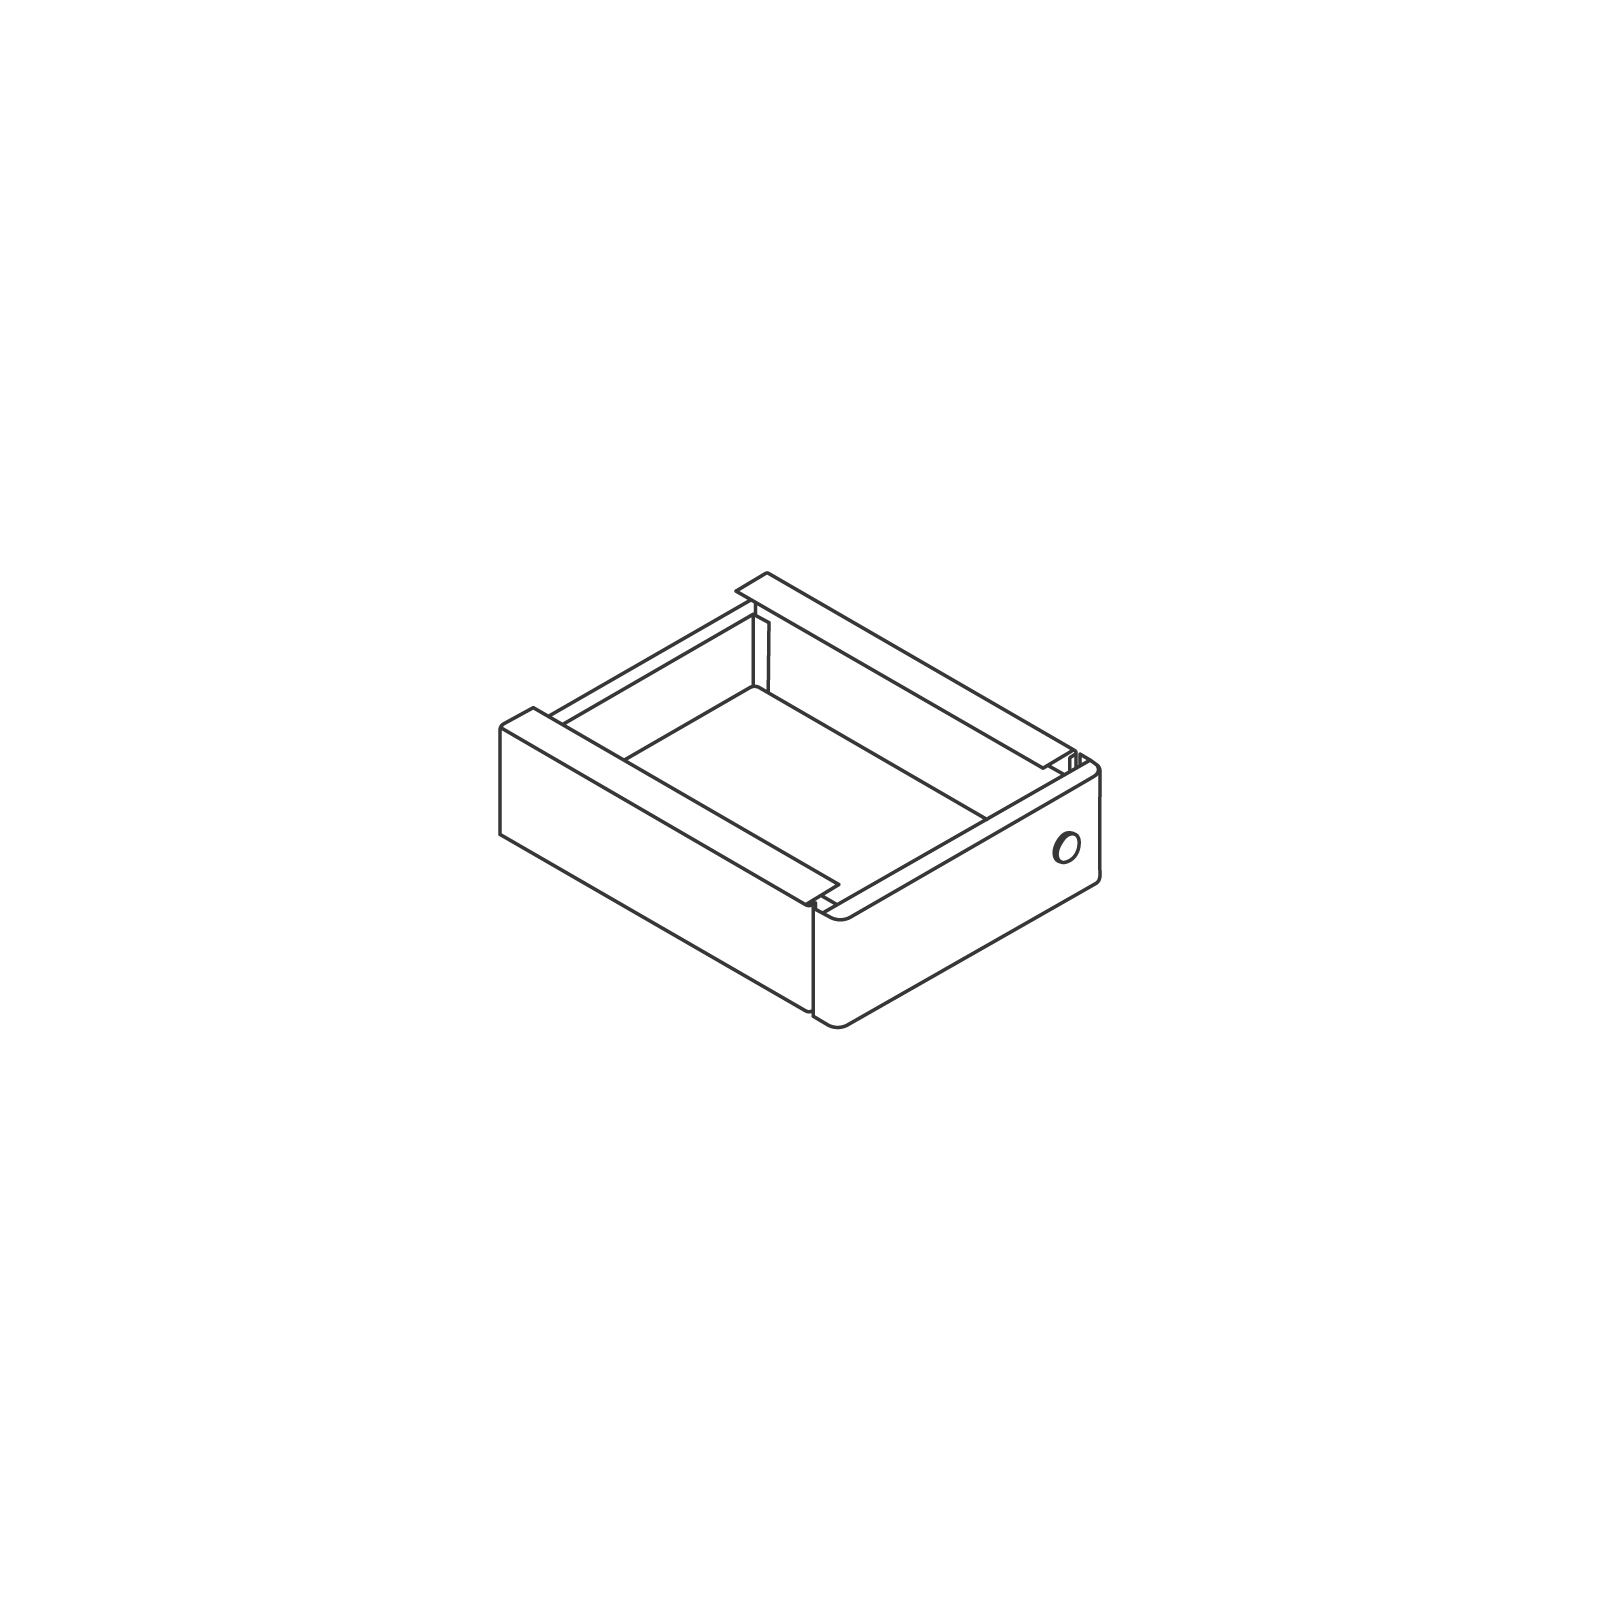 线描图 - Ambit小型悬挂式储物柜